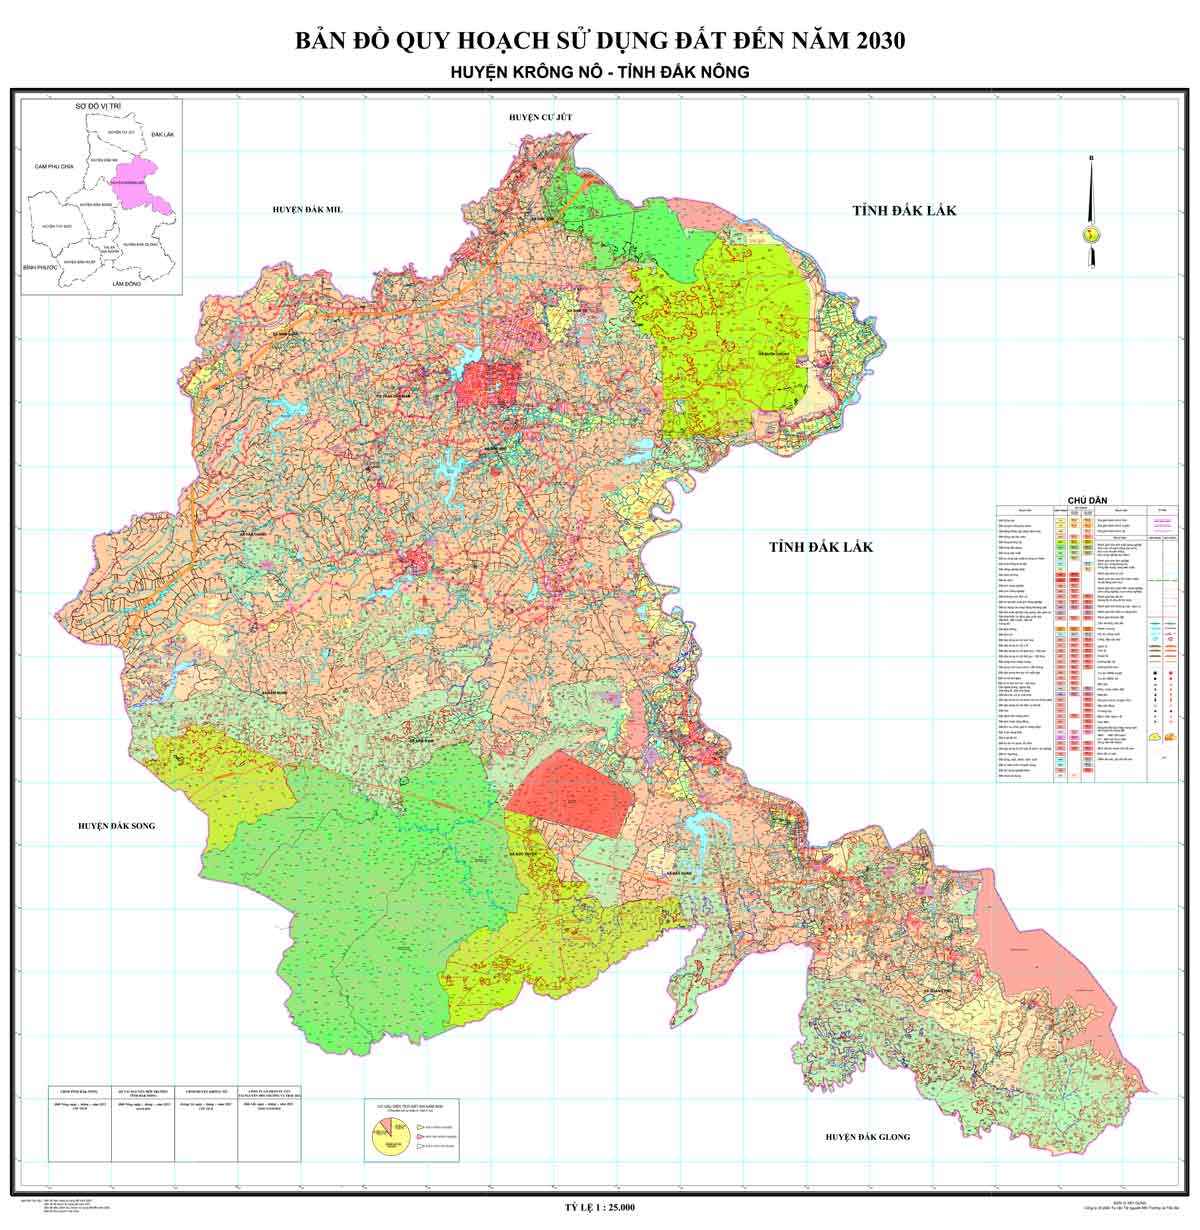 Bản đồ QHSDĐ huyện Krông Nô đến năm 2030